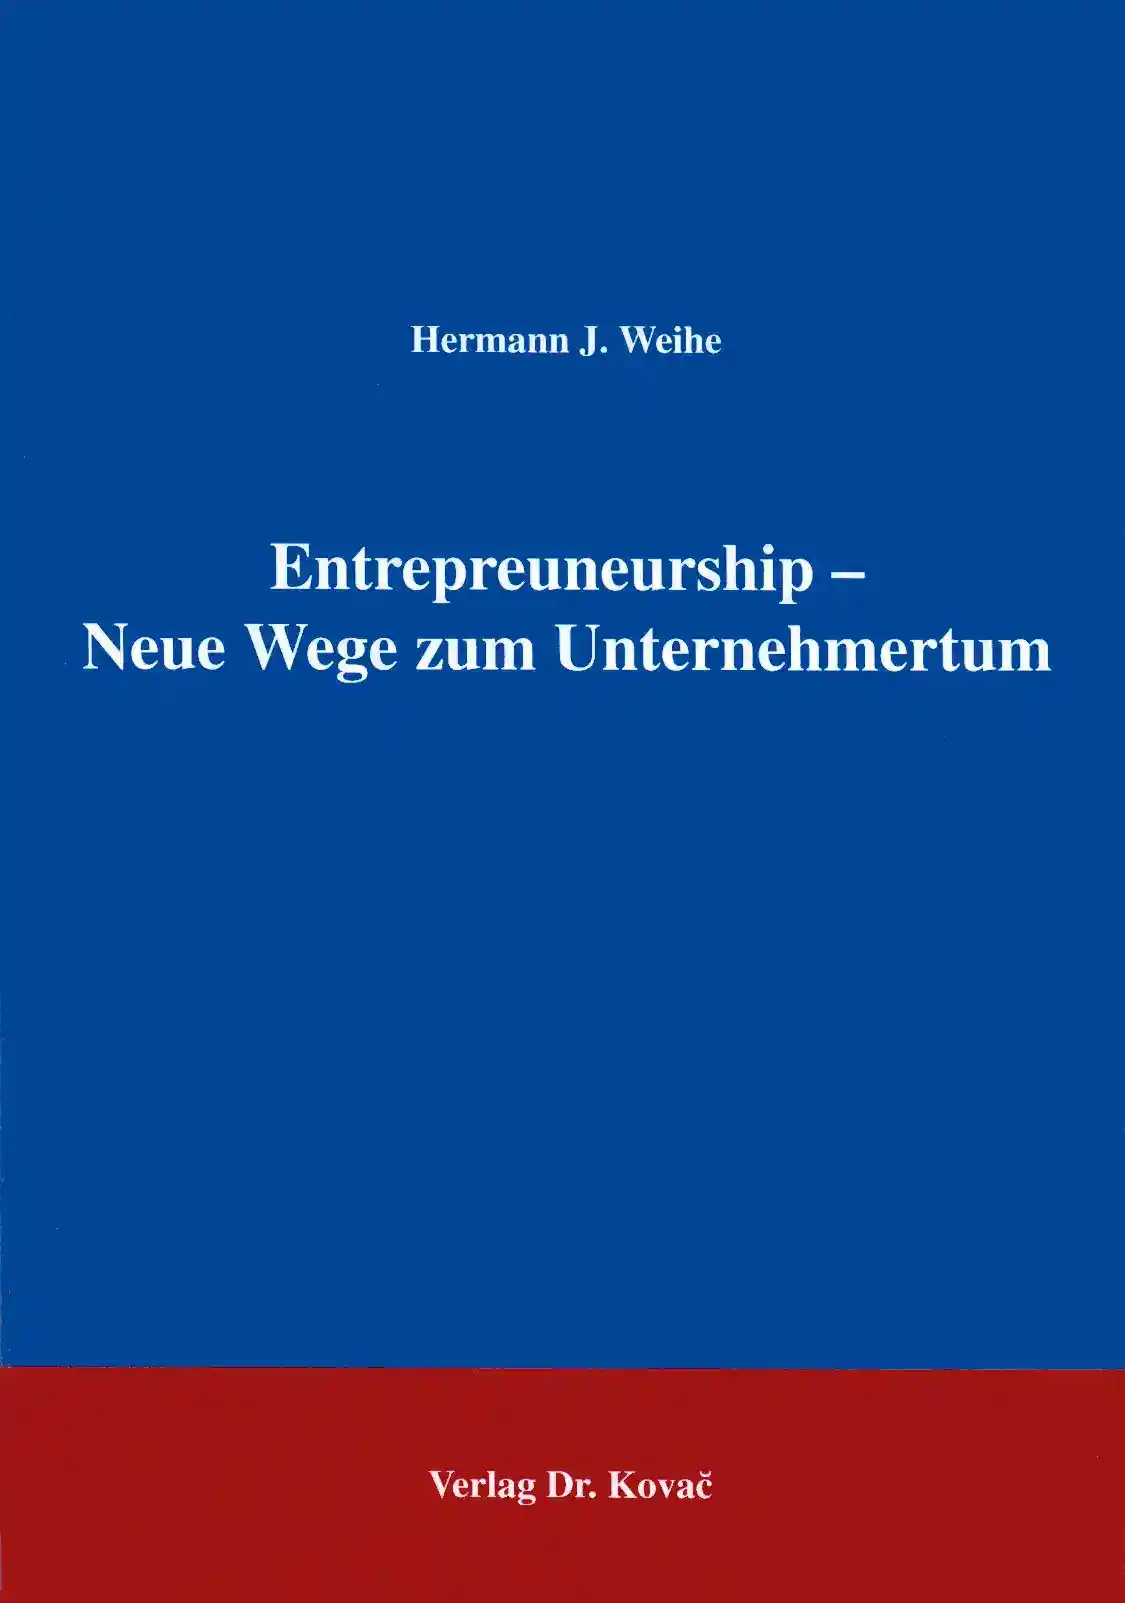 Entrepreneurship - Neue Wege zum Unternehmertum (Forschungsarbeit)